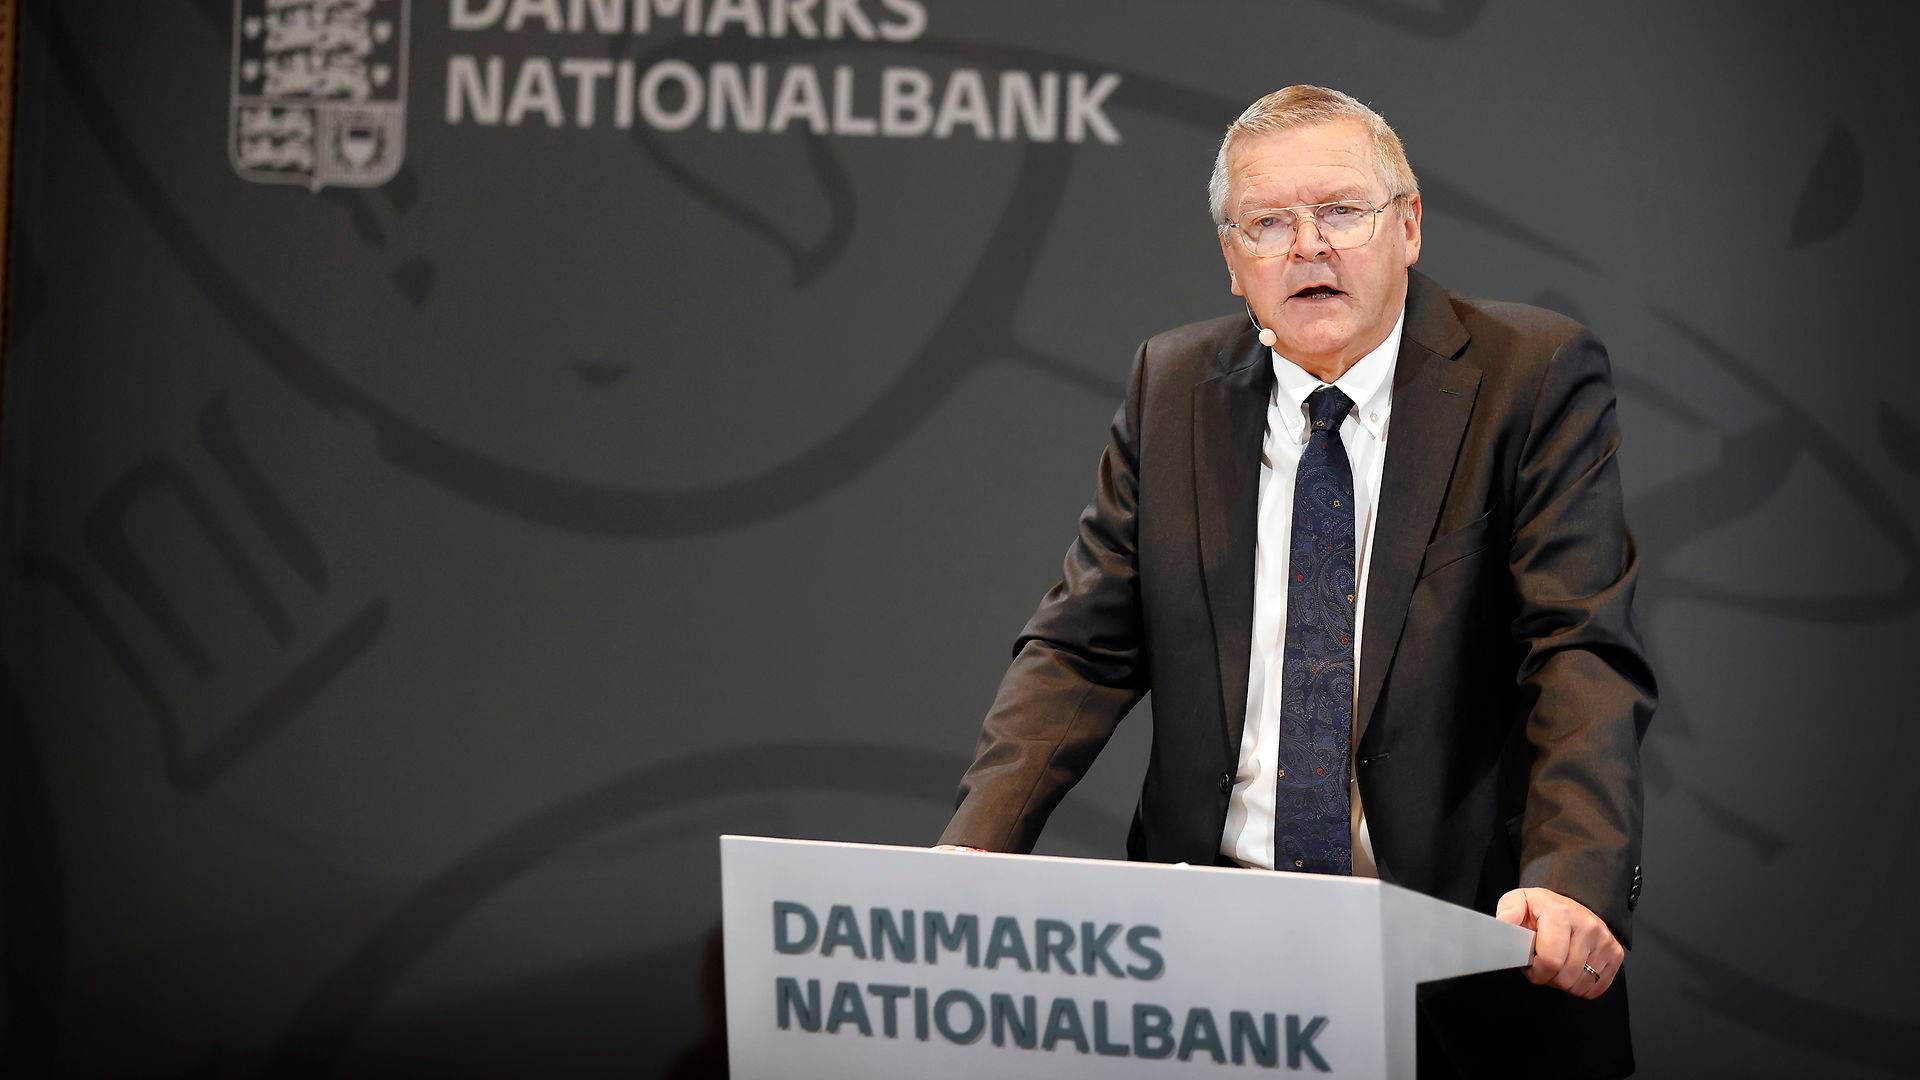 Nationalbankens nye direktionsmedlem, Signe Krogstrup, overtager et af Lars Rohdes ansvarsområder. | Foto: Jens Dresling/Ritzau Scanpix